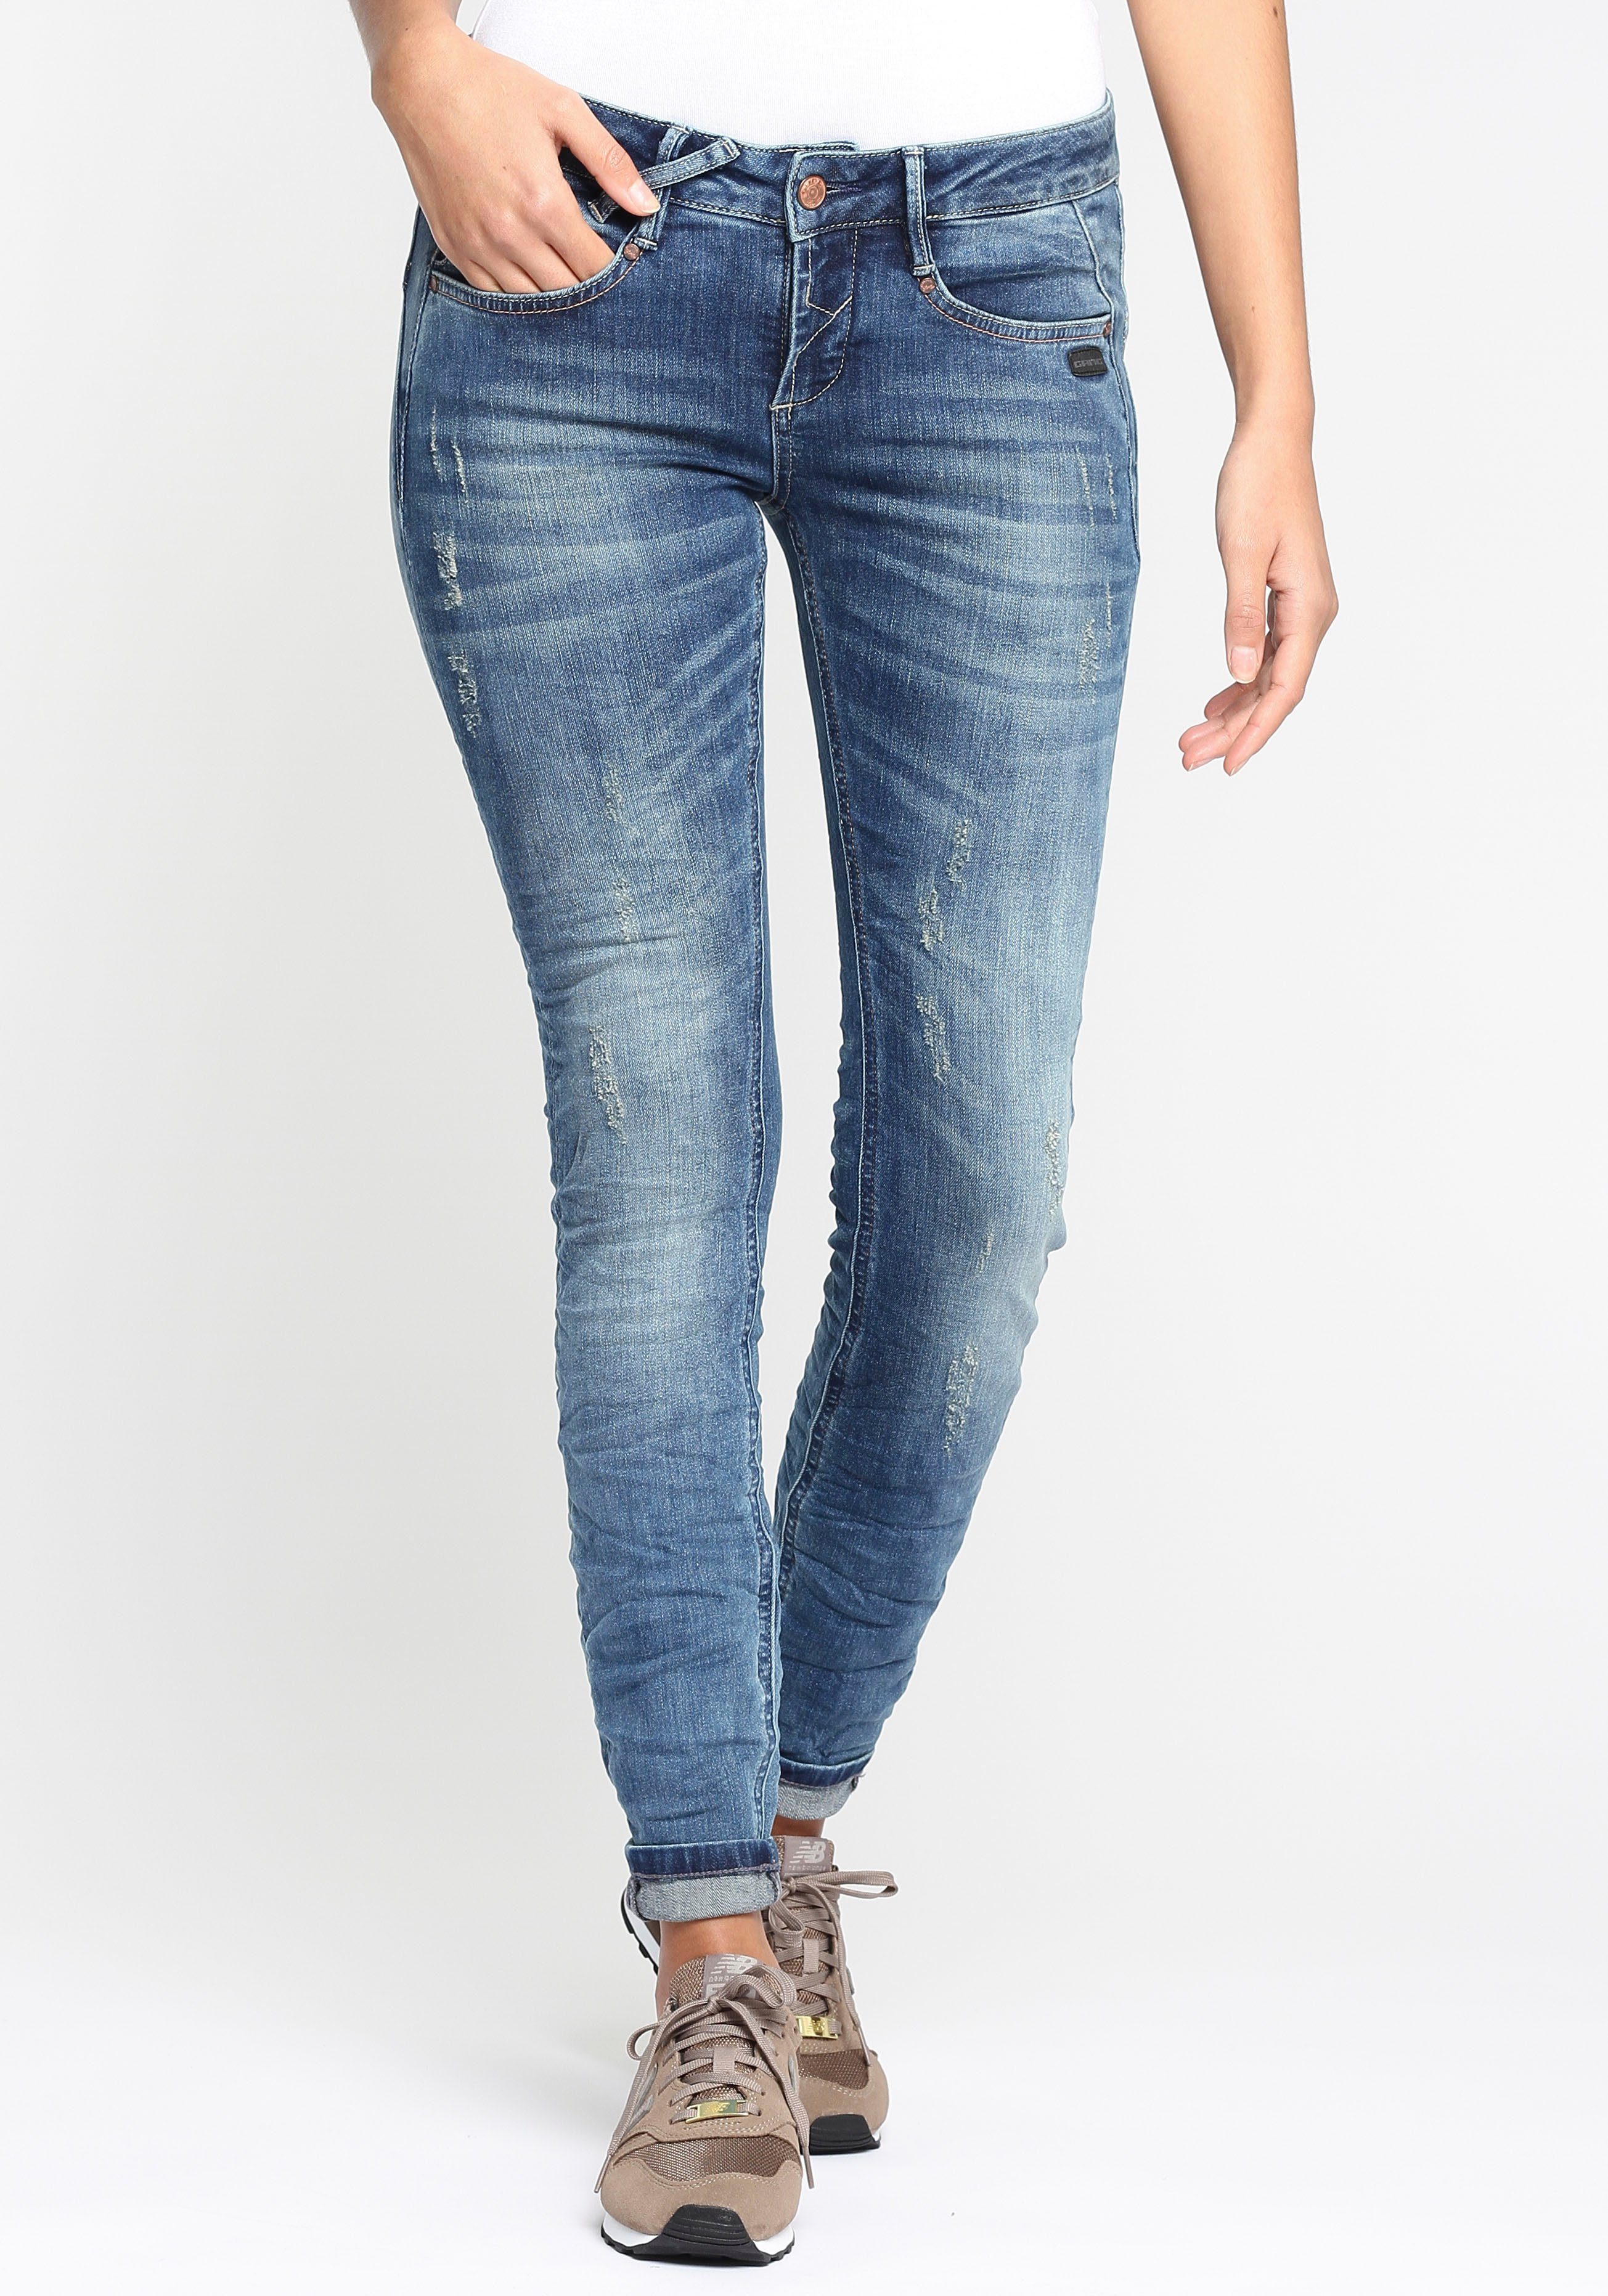 GANG Skinny-fit-Jeans 94NELE am vorne Rundpasse gekreuzten mit mit Bund, und Damenjeans Dreieckseinsätzen seitlichen Gürtelschlaufen